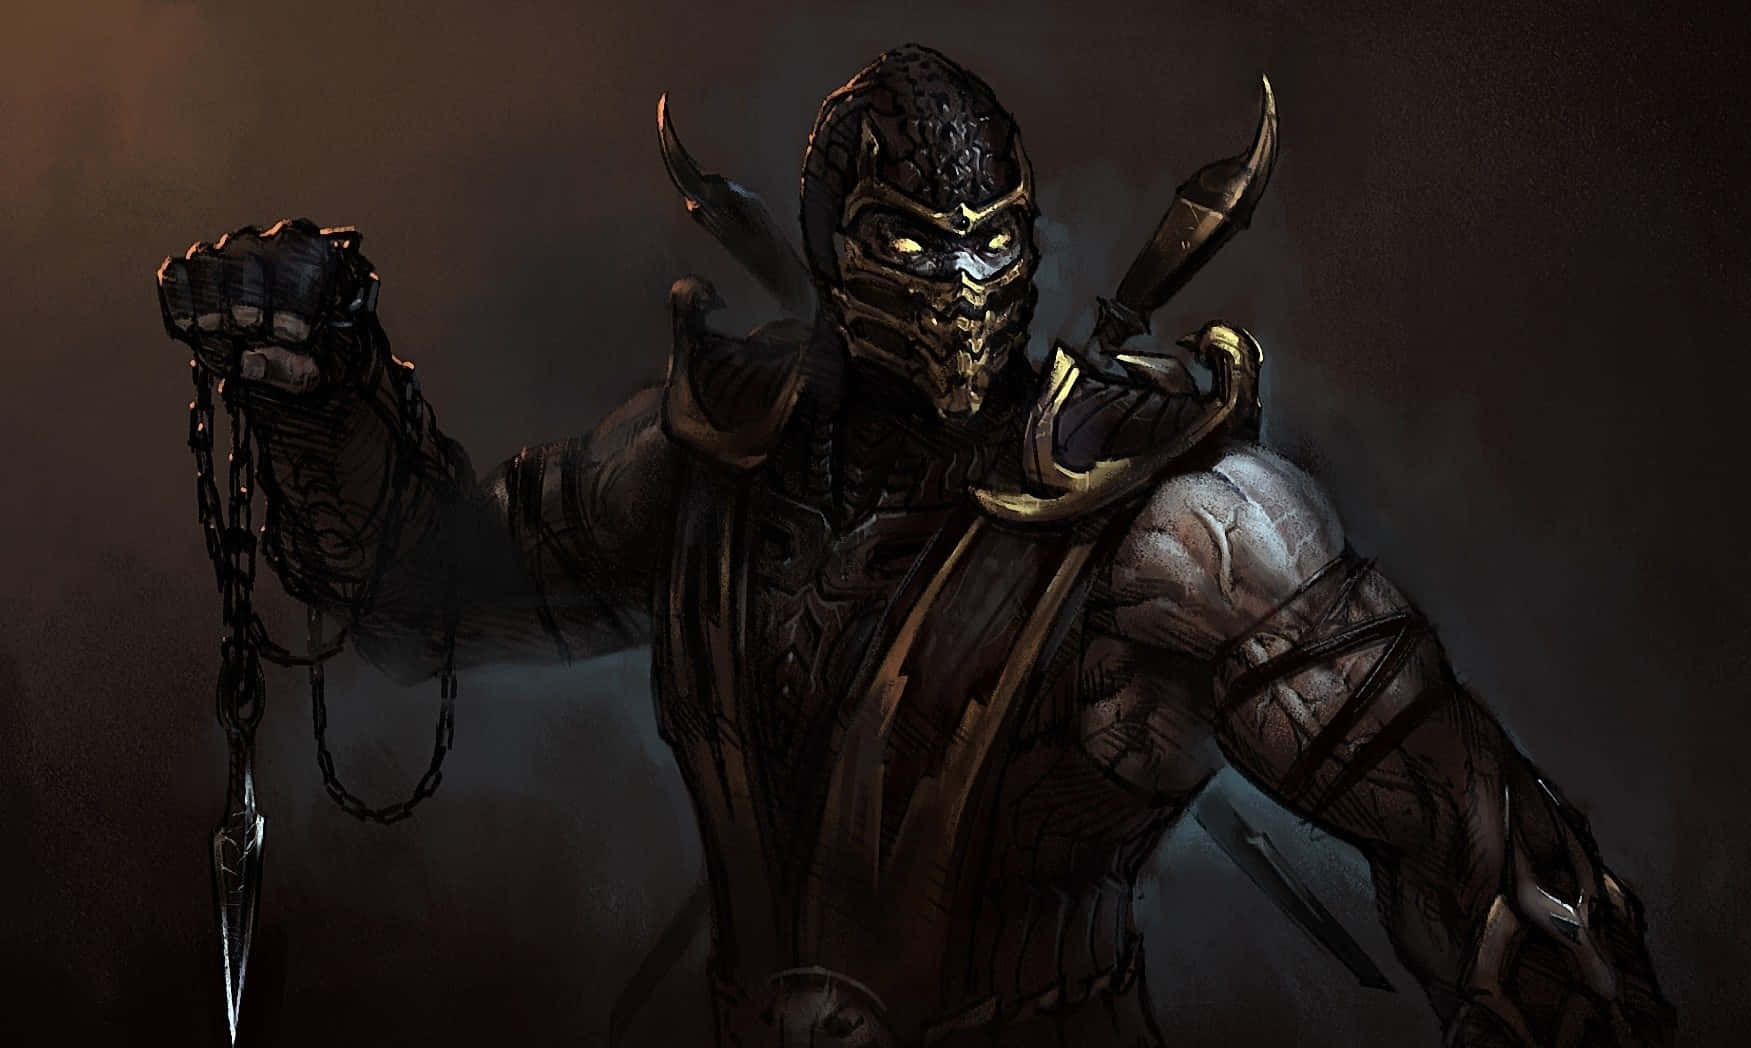 Ilmaestro Di Arti Marziali Scorpion Affronta I Suoi Nemici In Mortal Kombat Sfondo